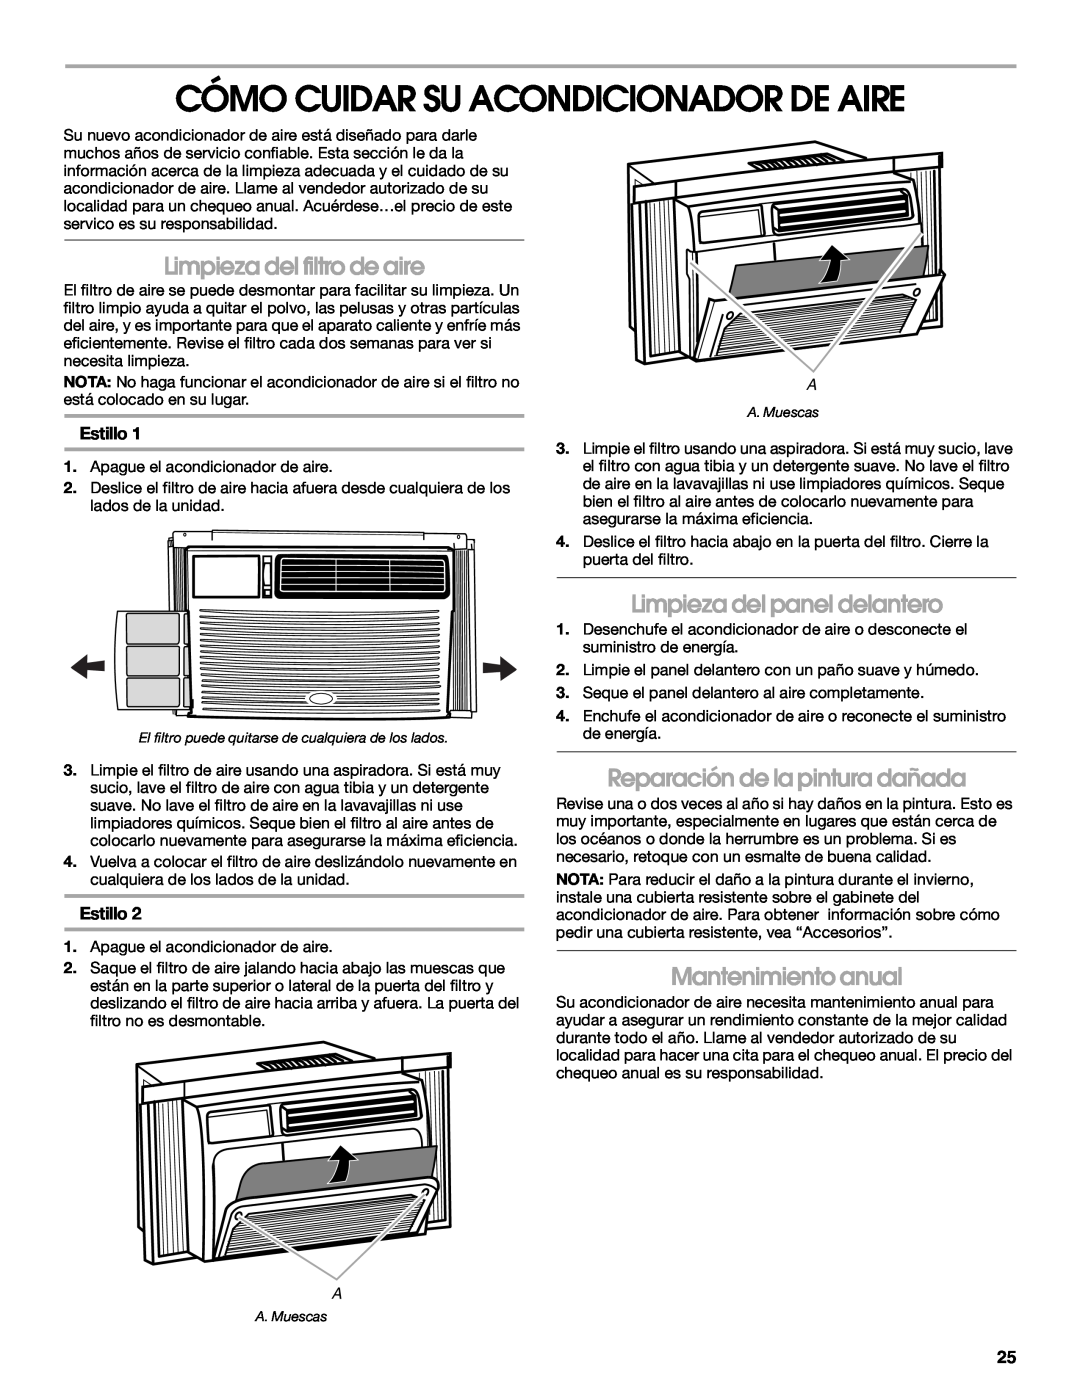 Whirlpool ACM052PS0 manual Cómo Cuidar Su Acondicionador De Aire, Limpieza del filtro de aire, Limpieza del panel delantero 